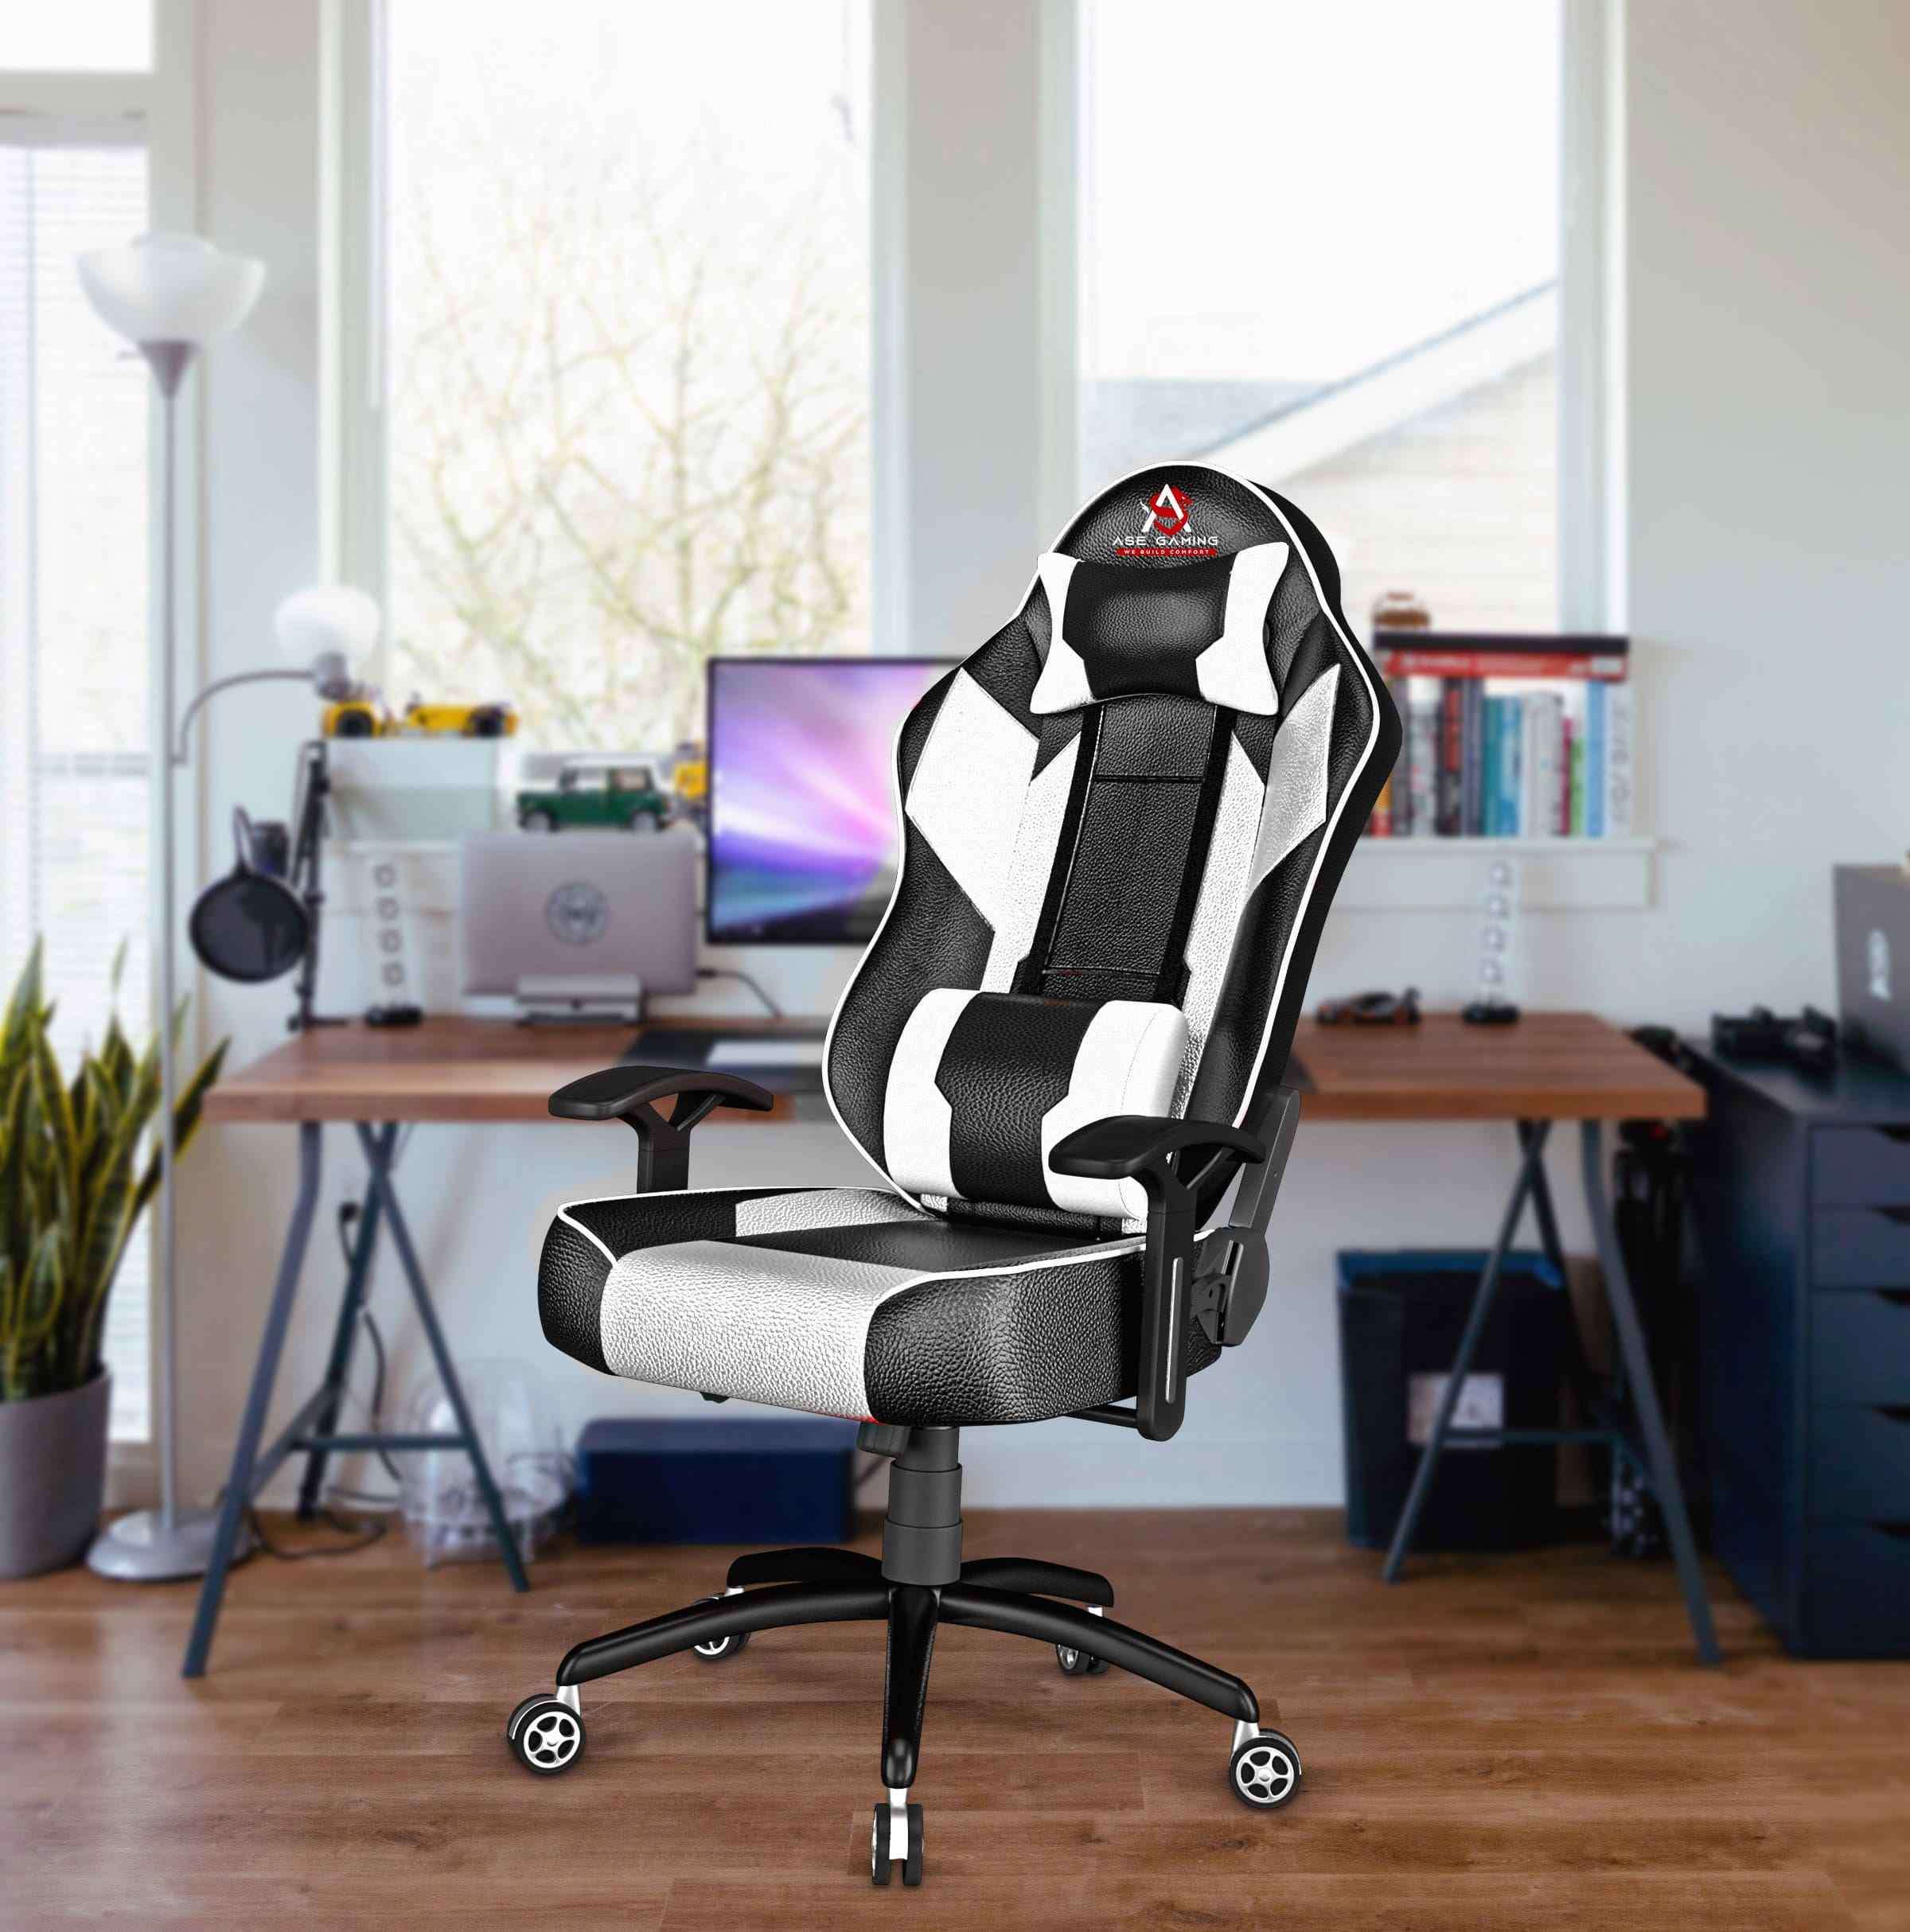 ASE Gaming Modern Series Gaming Chair (White & Black)